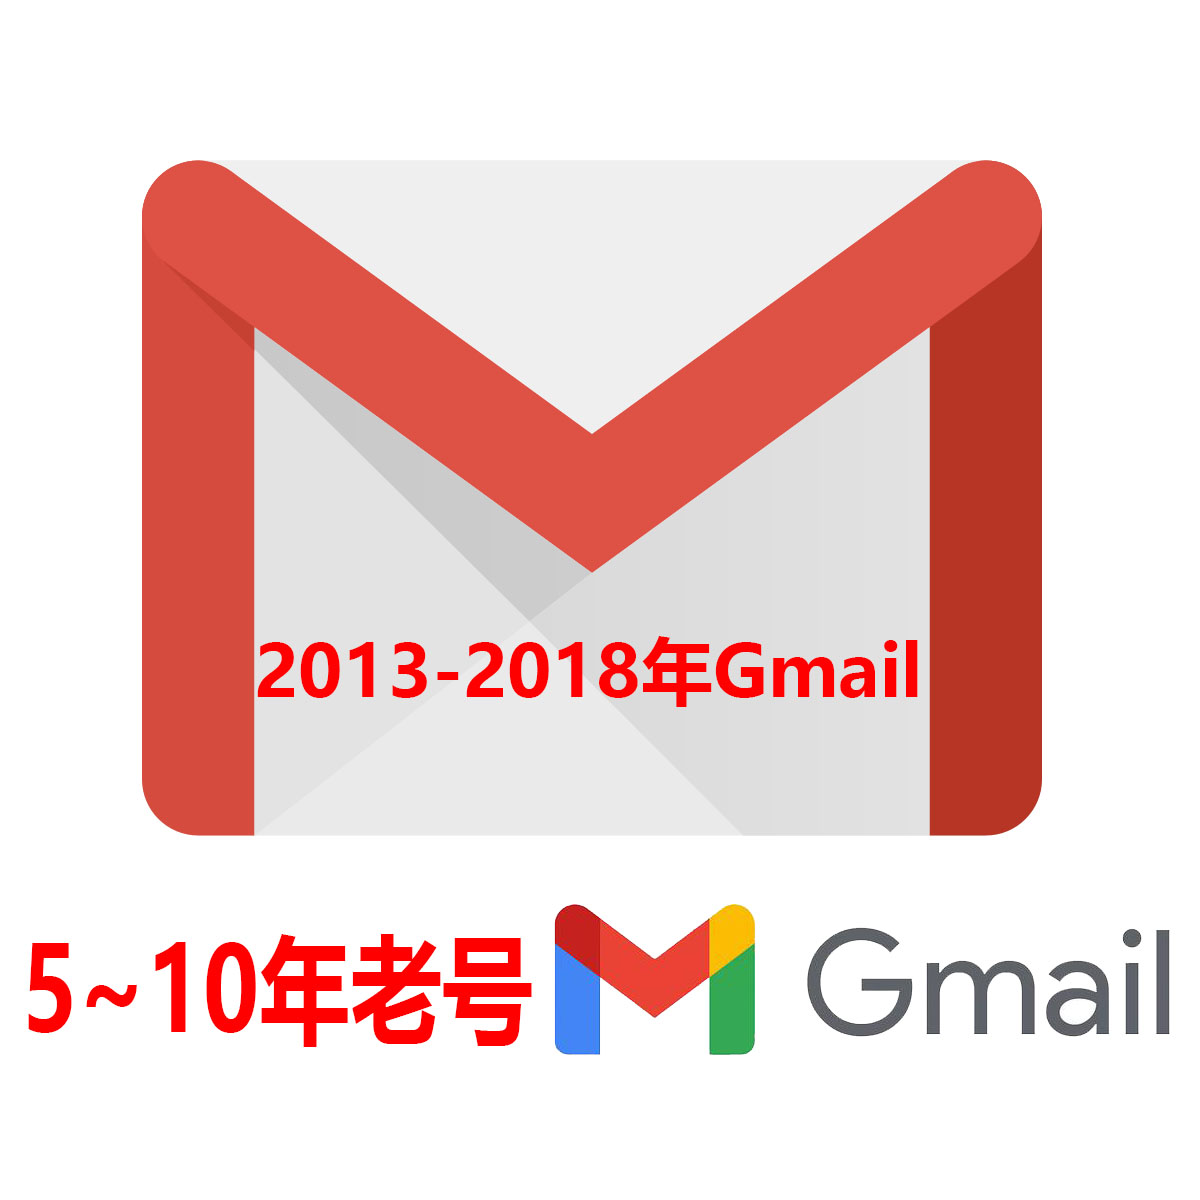 5-10年老Gmail|随机地区|质量高超高